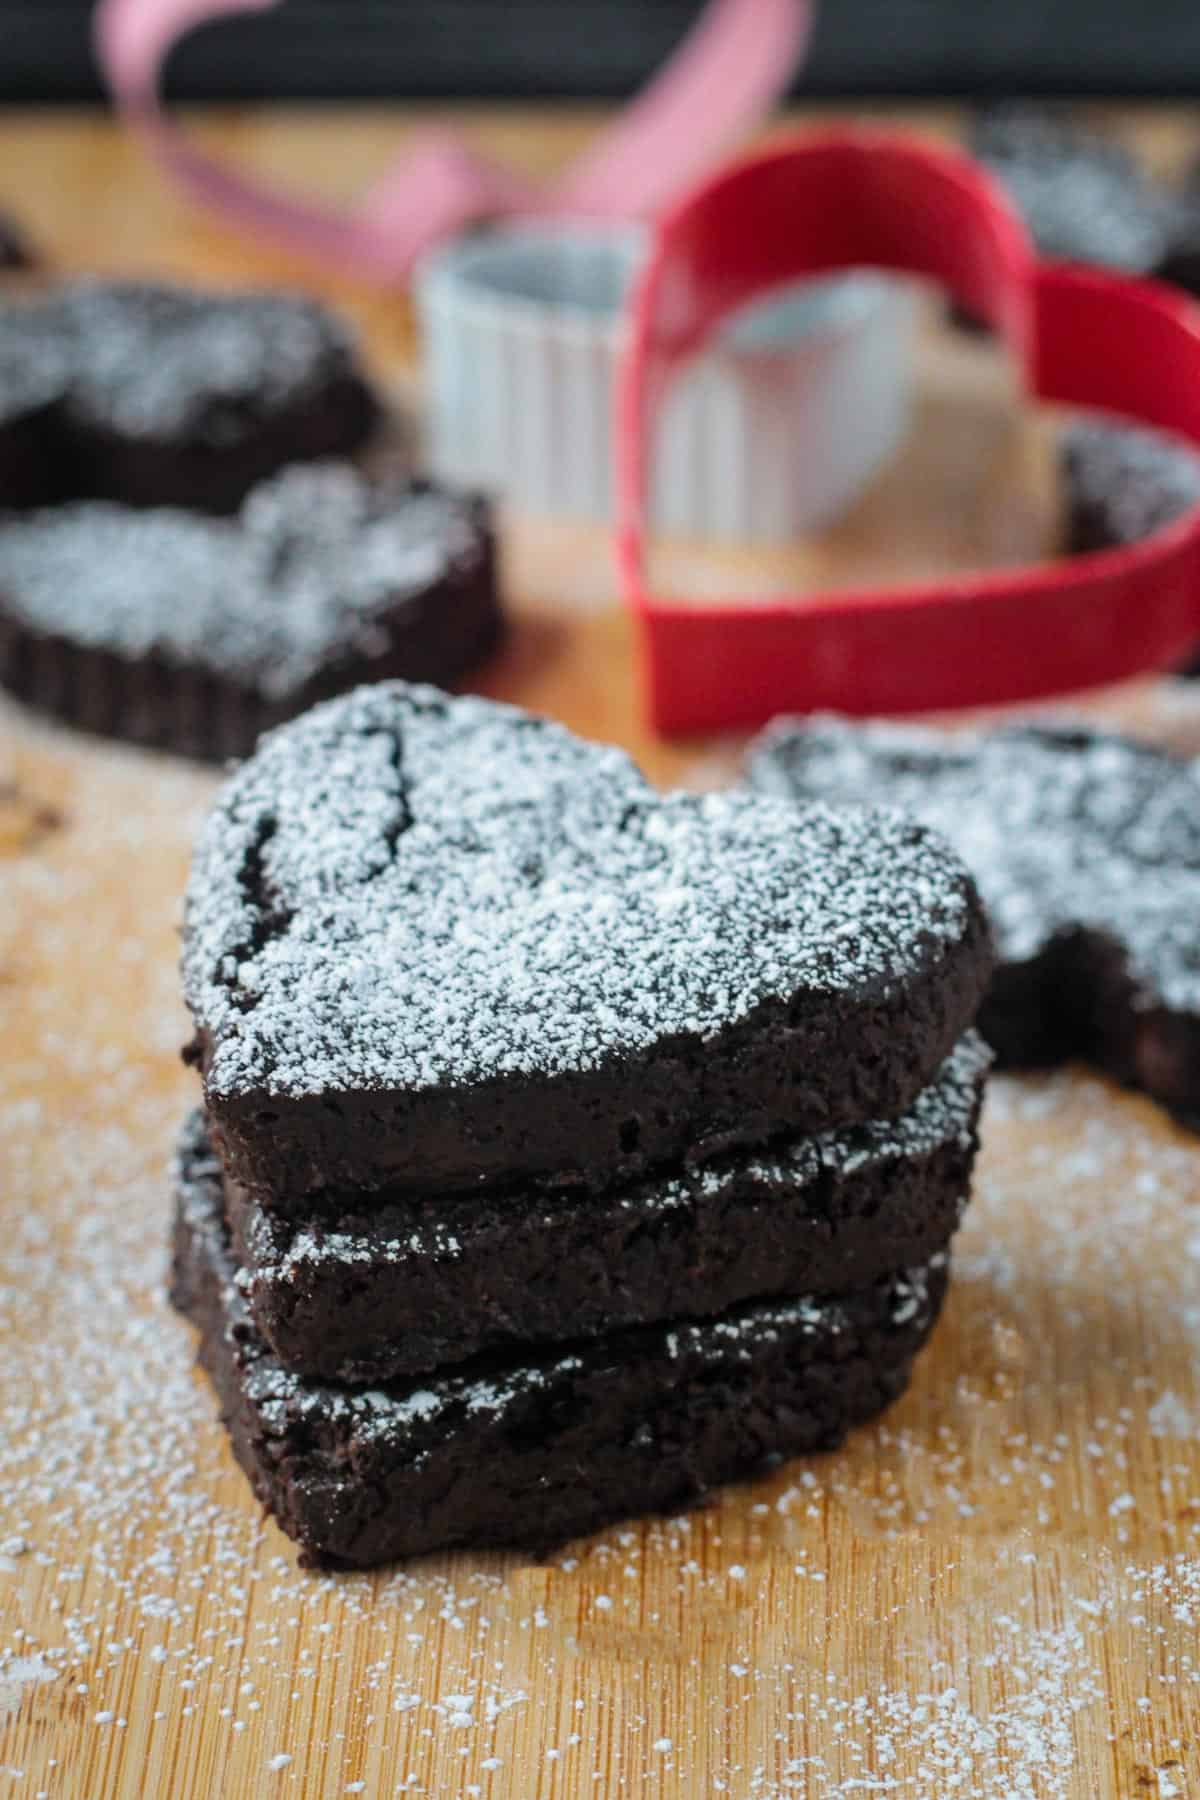 Stack of 3 vegan black bean brownies sprinkled with powdered sugar.